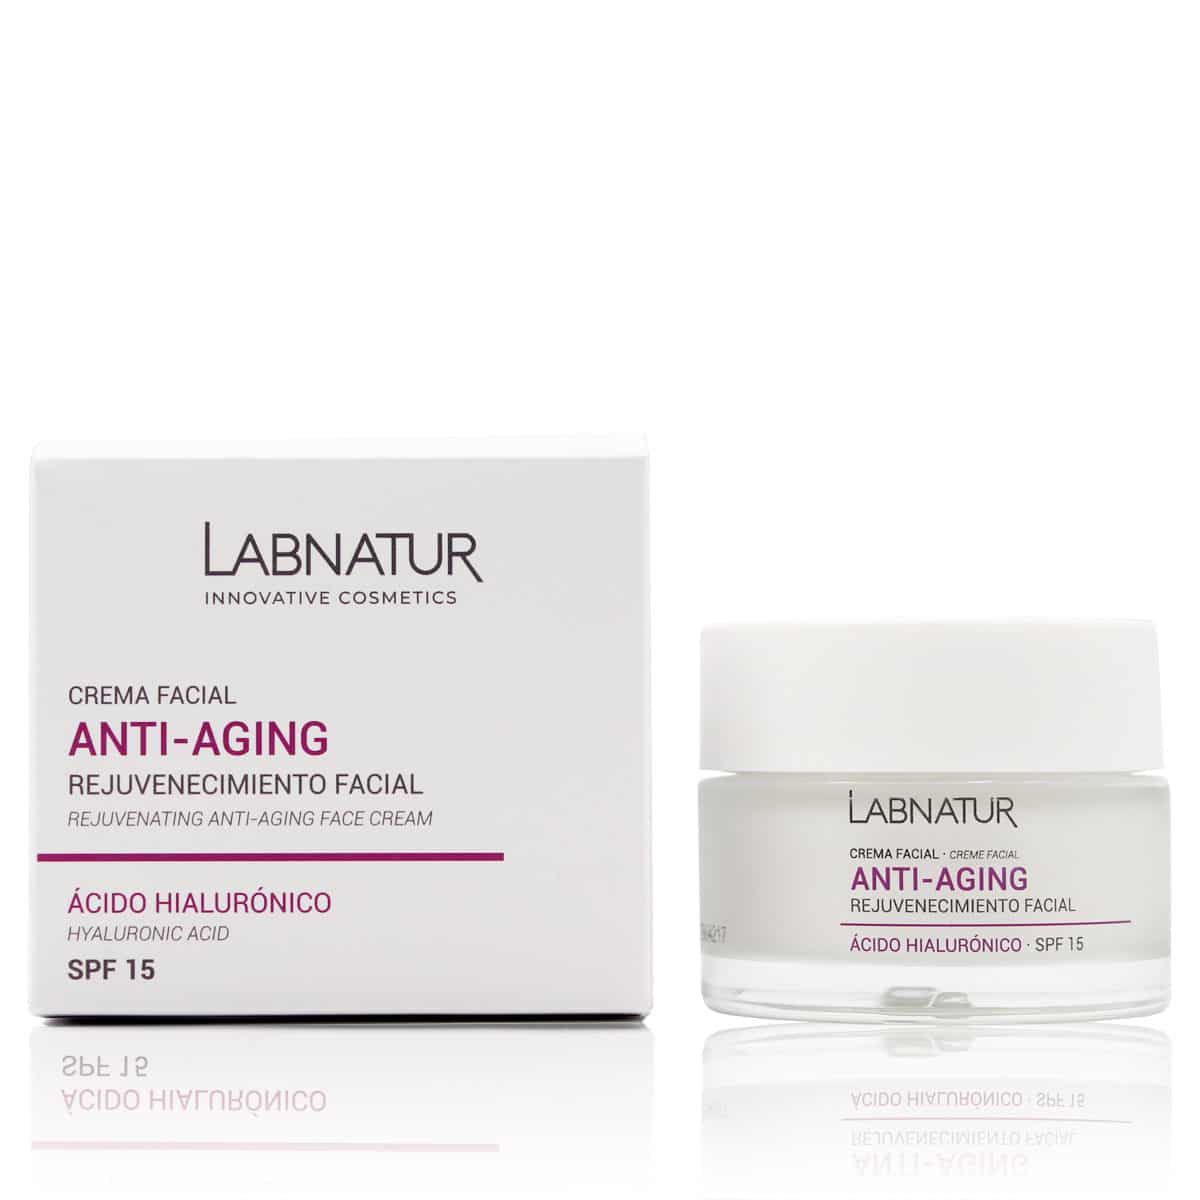 Comprar Crema Facial Anti-Aging Labnatur